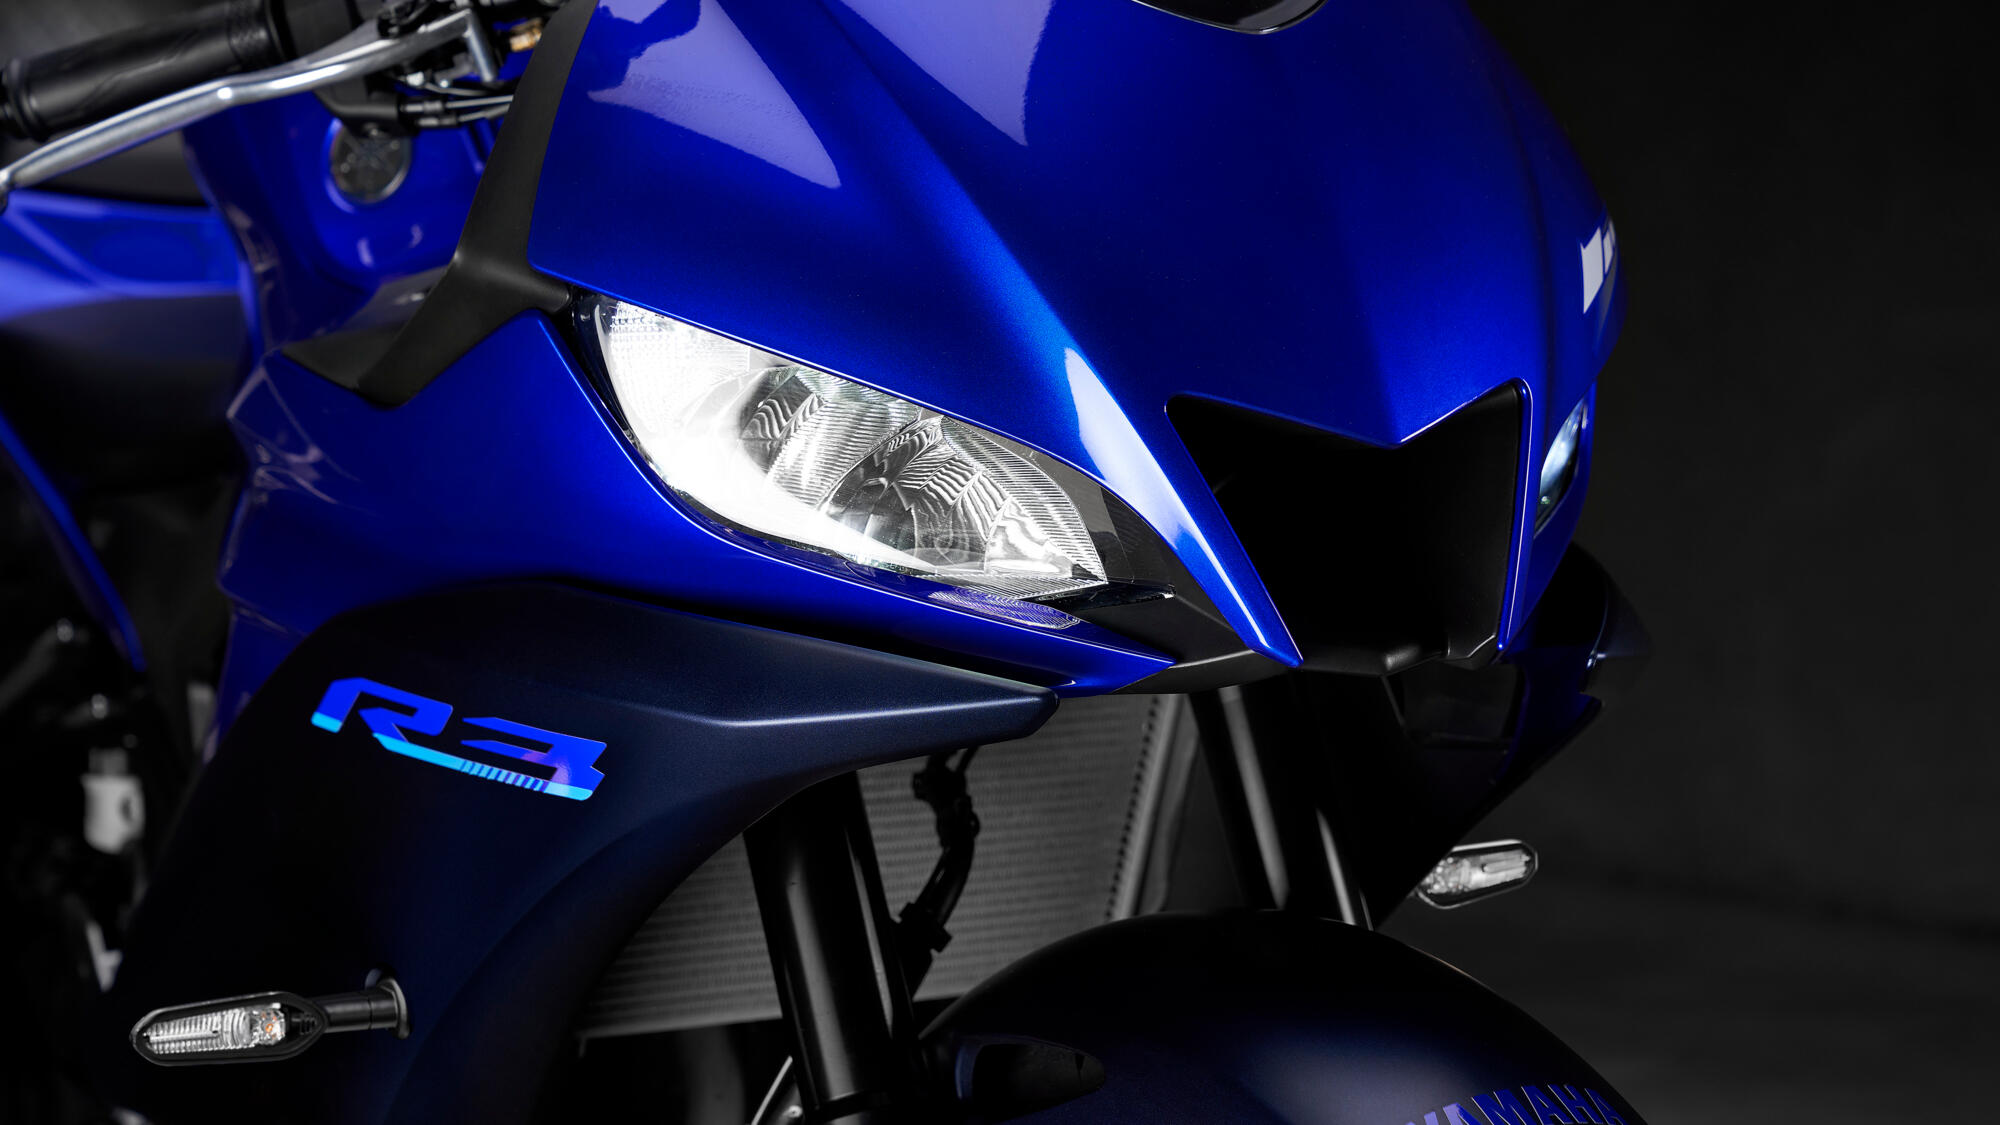 Radikalan izgled inspirisan modelom YZR-M1 MotoGP®